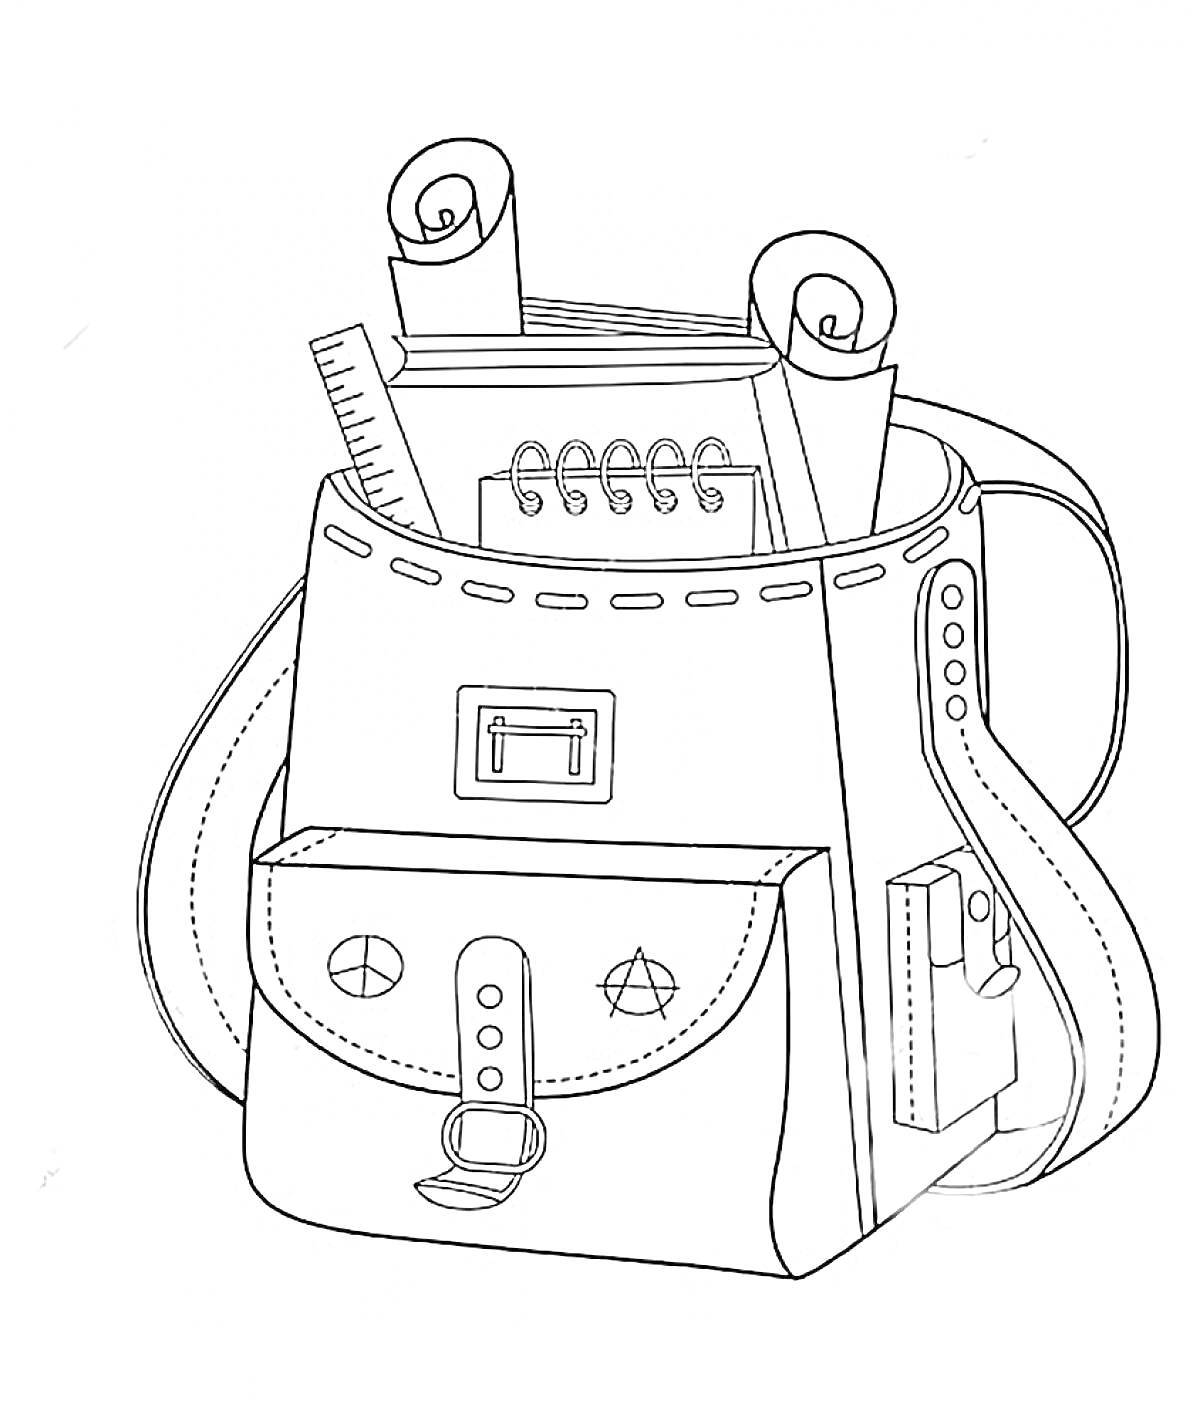 Рюкзак с блокнотом, линейкой и свёрнутыми листами бумаги